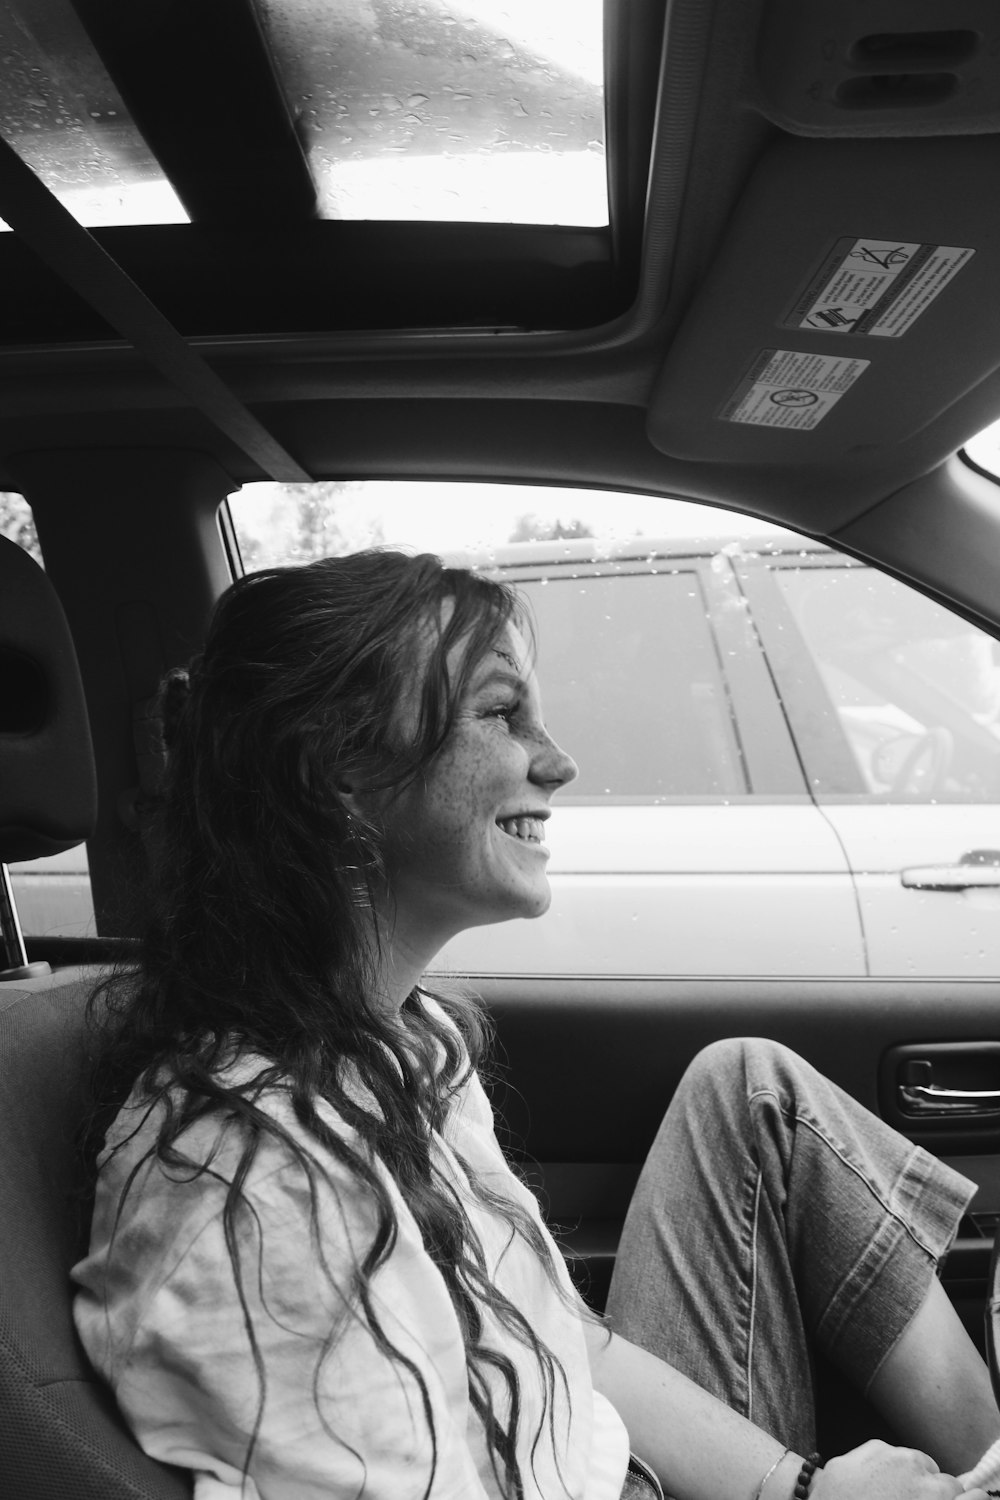 a woman sitting in a car